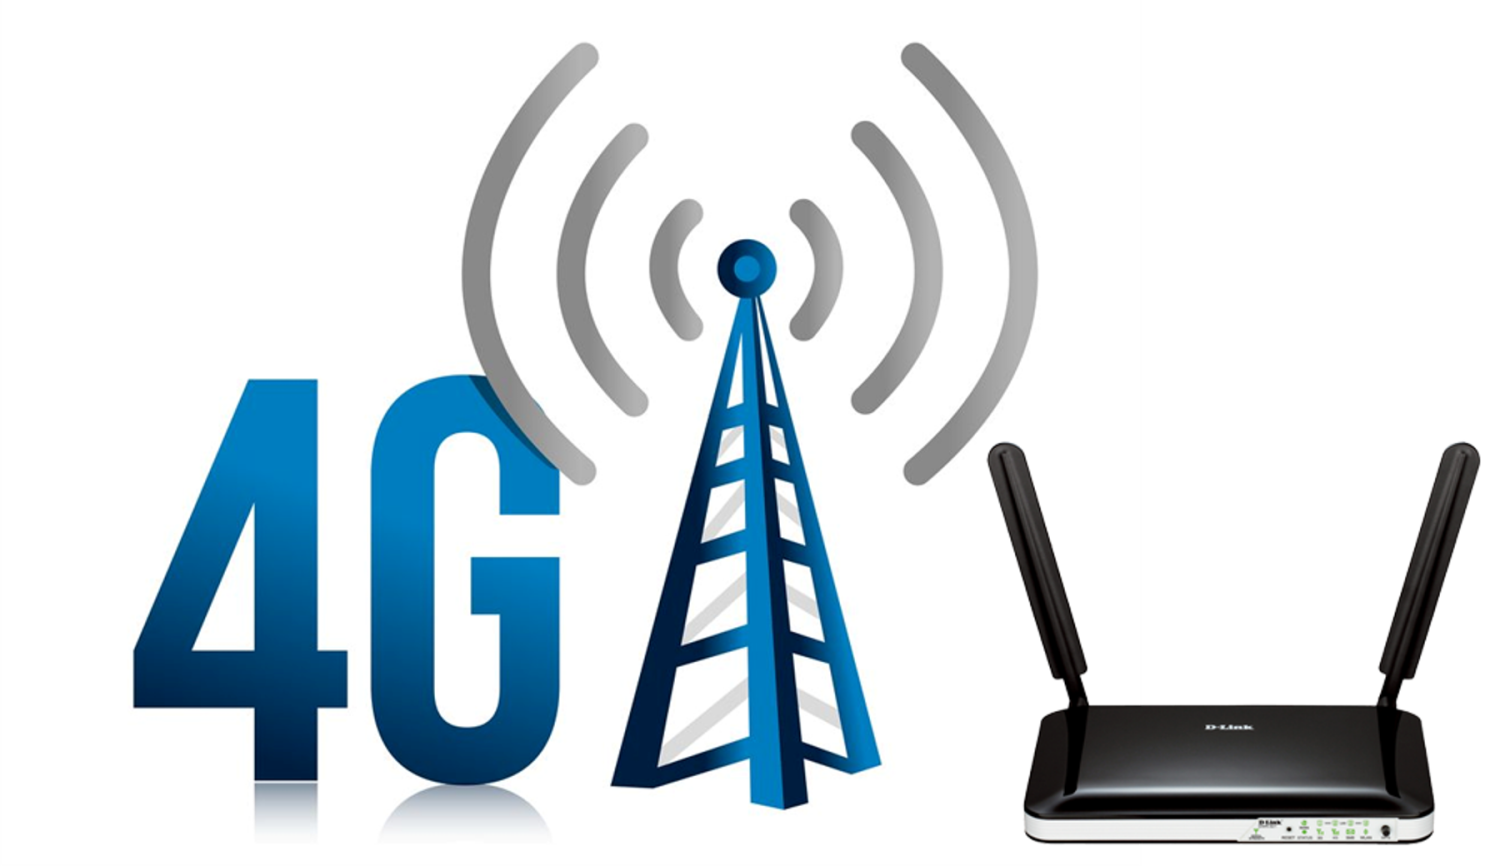 Хороший интернет 4g. Сети сотовой связи 4g. 4g LTE. 3g 4g LTE device. Мобильная сеть 4g (WIMAX va LTE).